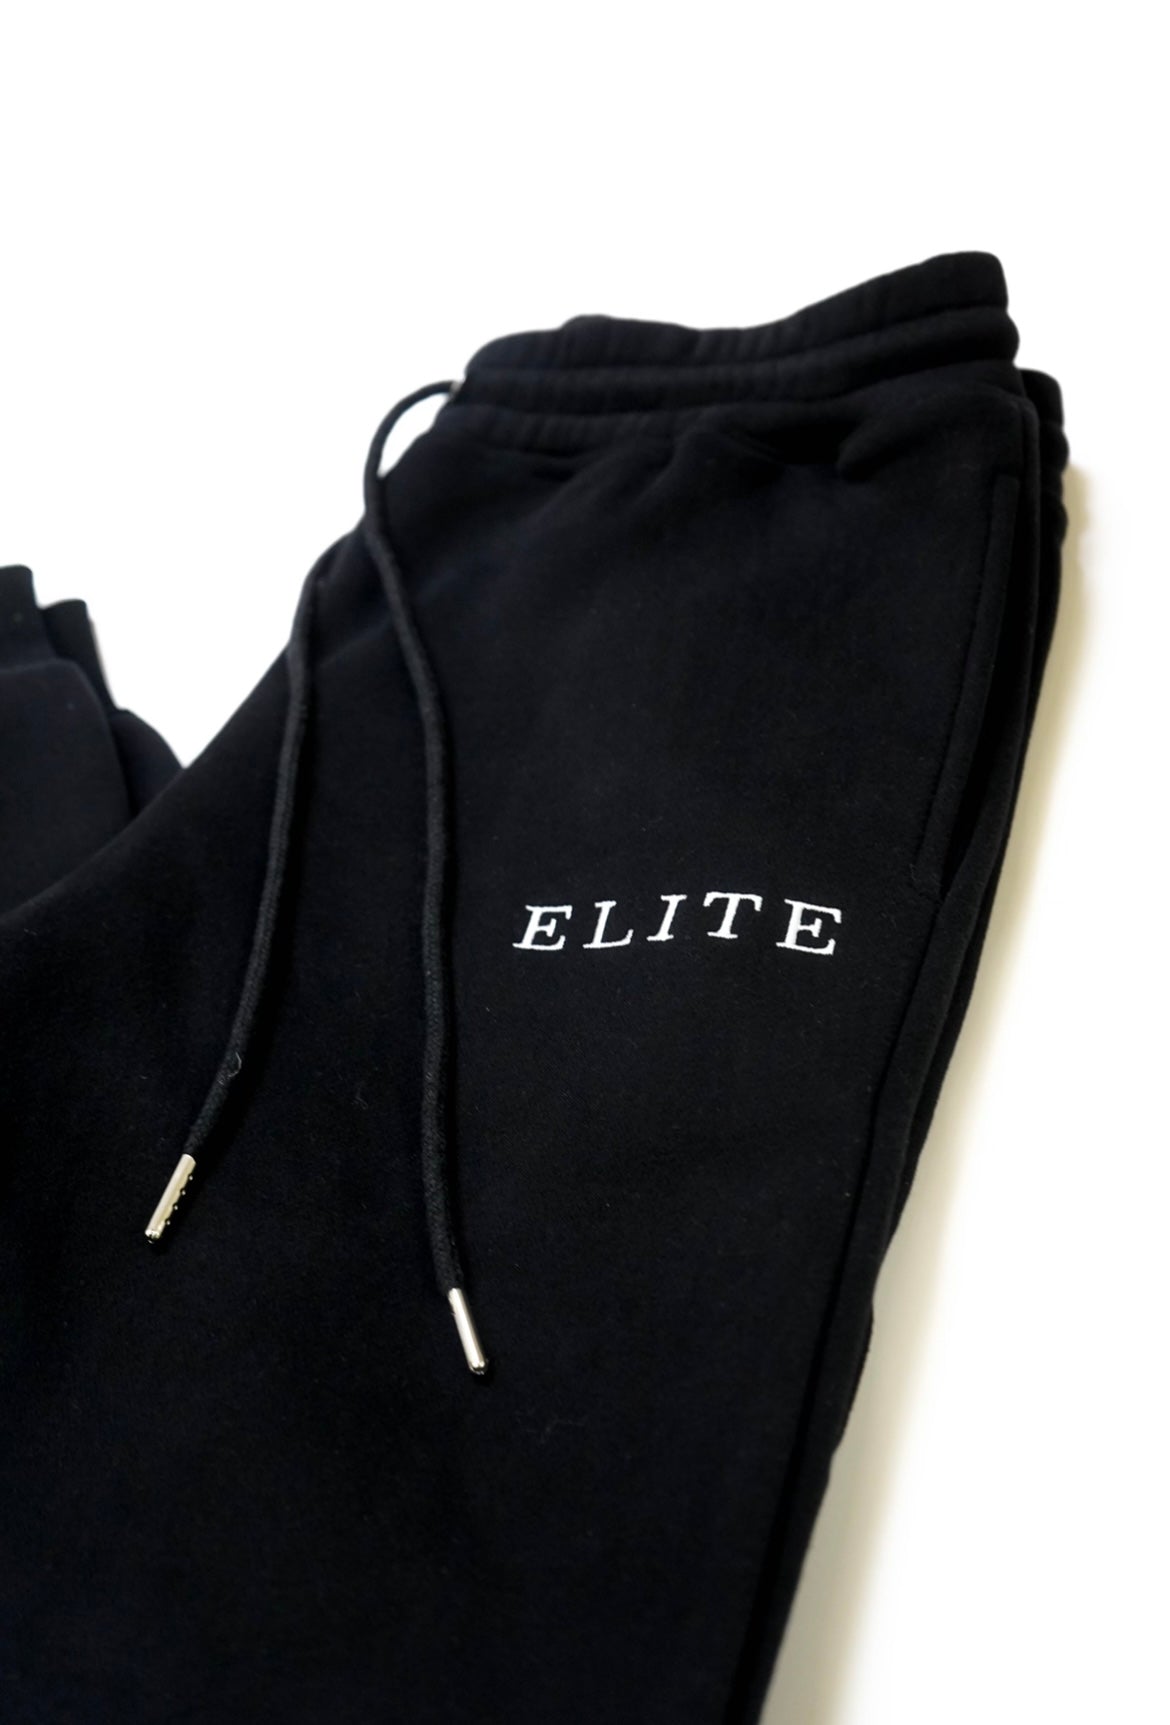 Elite Sweat Suit (Black)